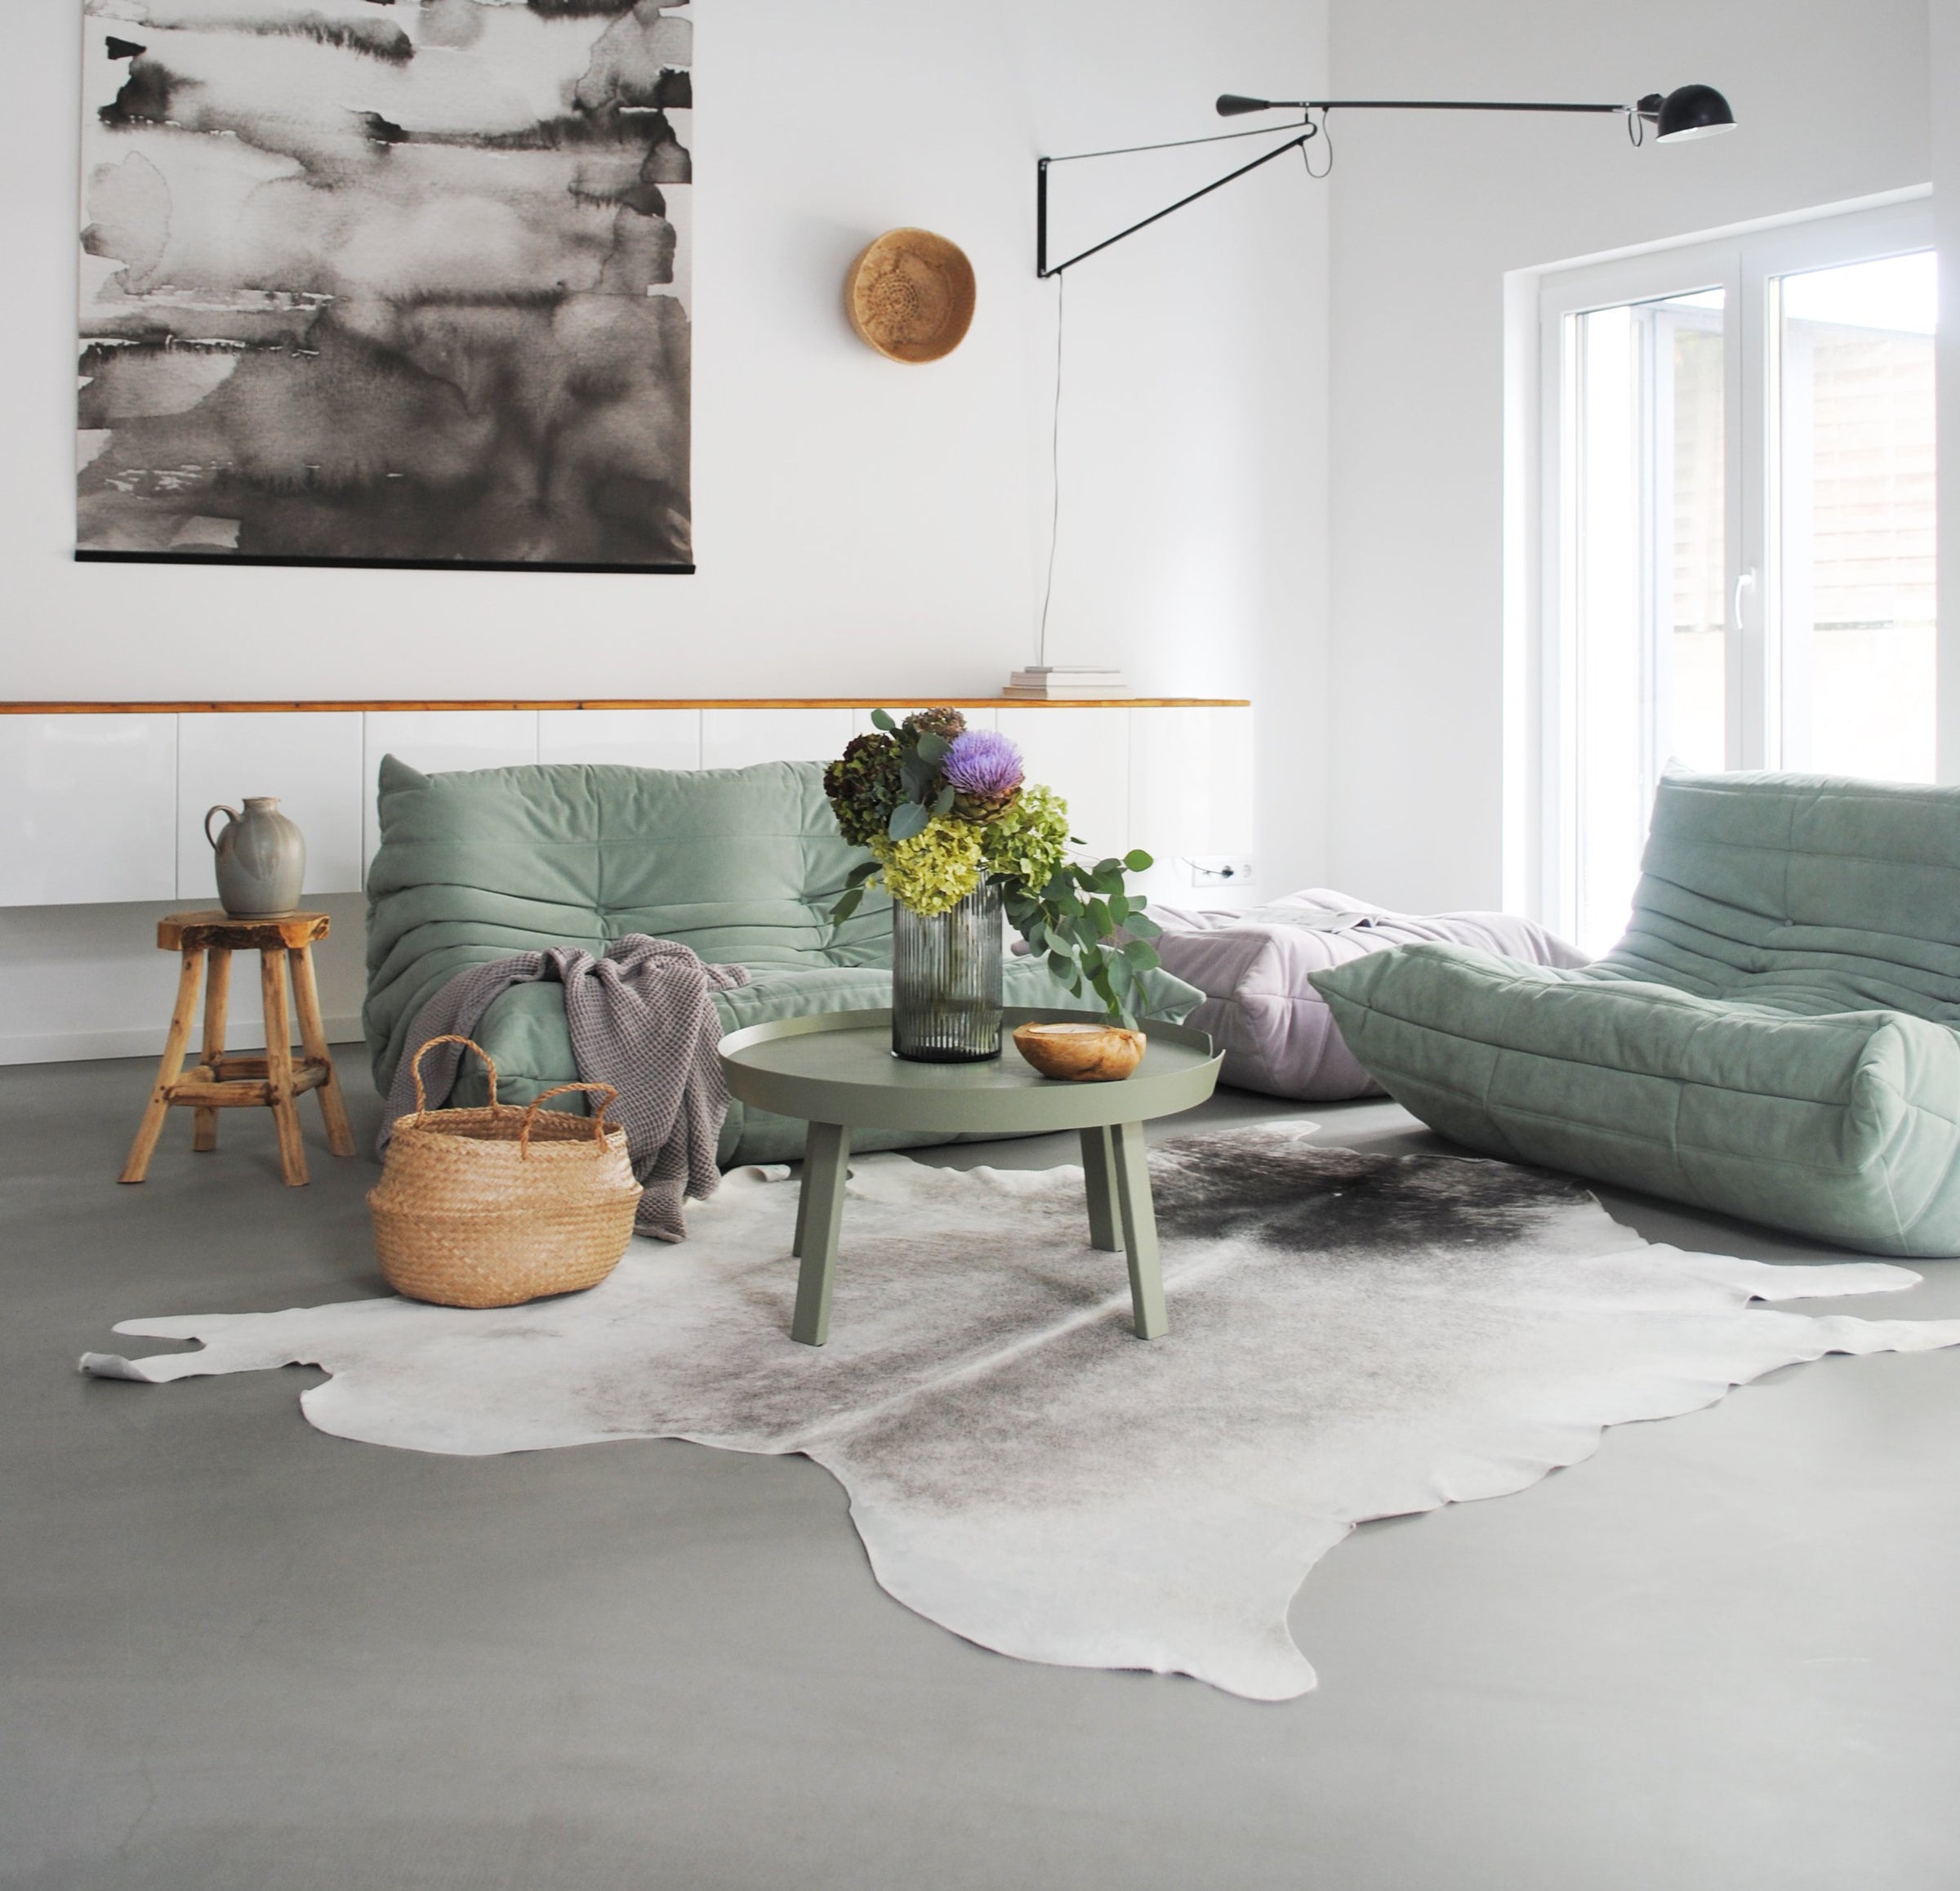 lignet roset Togo Sofa in grün - gebrauchte Designermöbel bei Revive in Köln, couchtisch, wohnzimmertisch, wohnzimmer ideen, wohnzimmer, wohnzimmer möbel,relaxliege, couchtisch glas, moderne wohnzimmer, sofa, sessel, gebrauchte möbel, möbel online